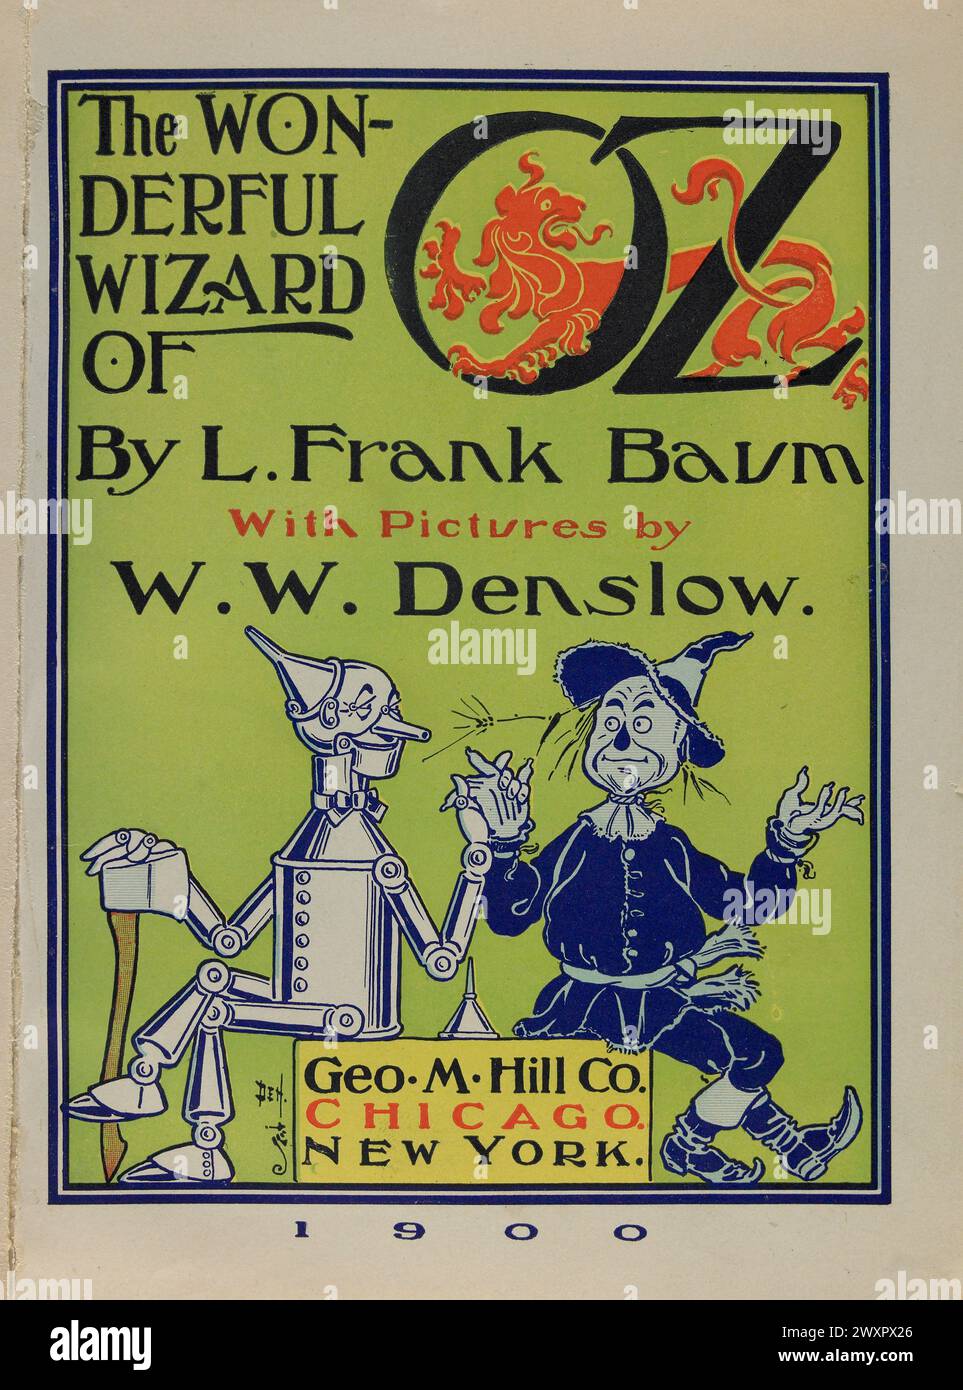 Livre Vintage illustré page de titre en couleur pour la première édition de The Wonderful Wizard of Oz de Frank Baum, 1900. Œuvre de William W. Denslow Banque D'Images